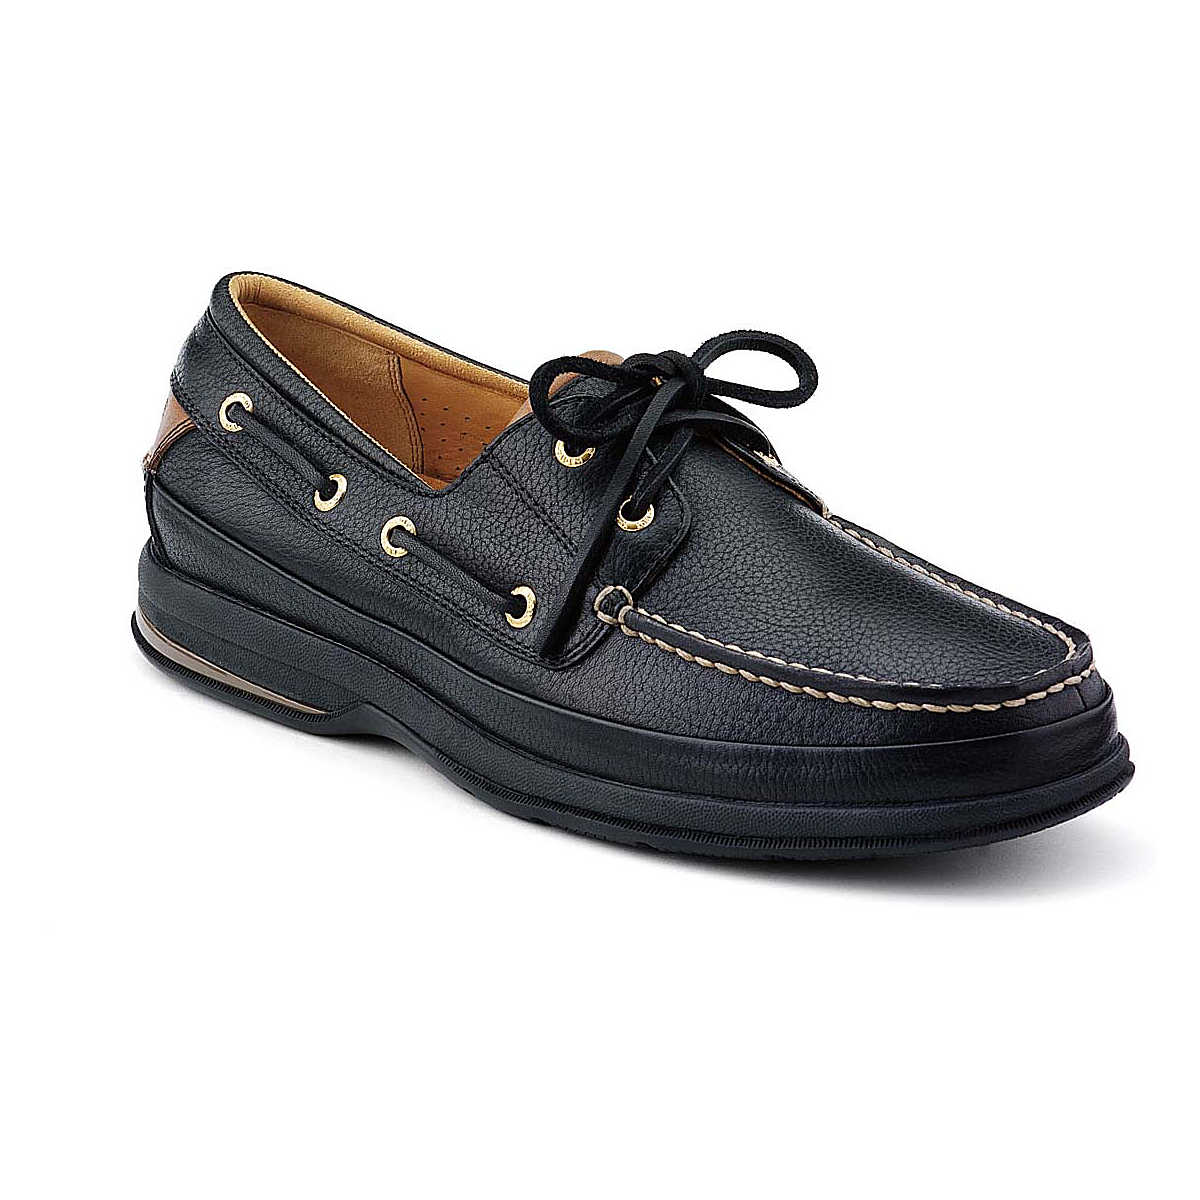 Gold ASV 2-Eye Boat Shoe, Black Leather / Tan, dynamic 1